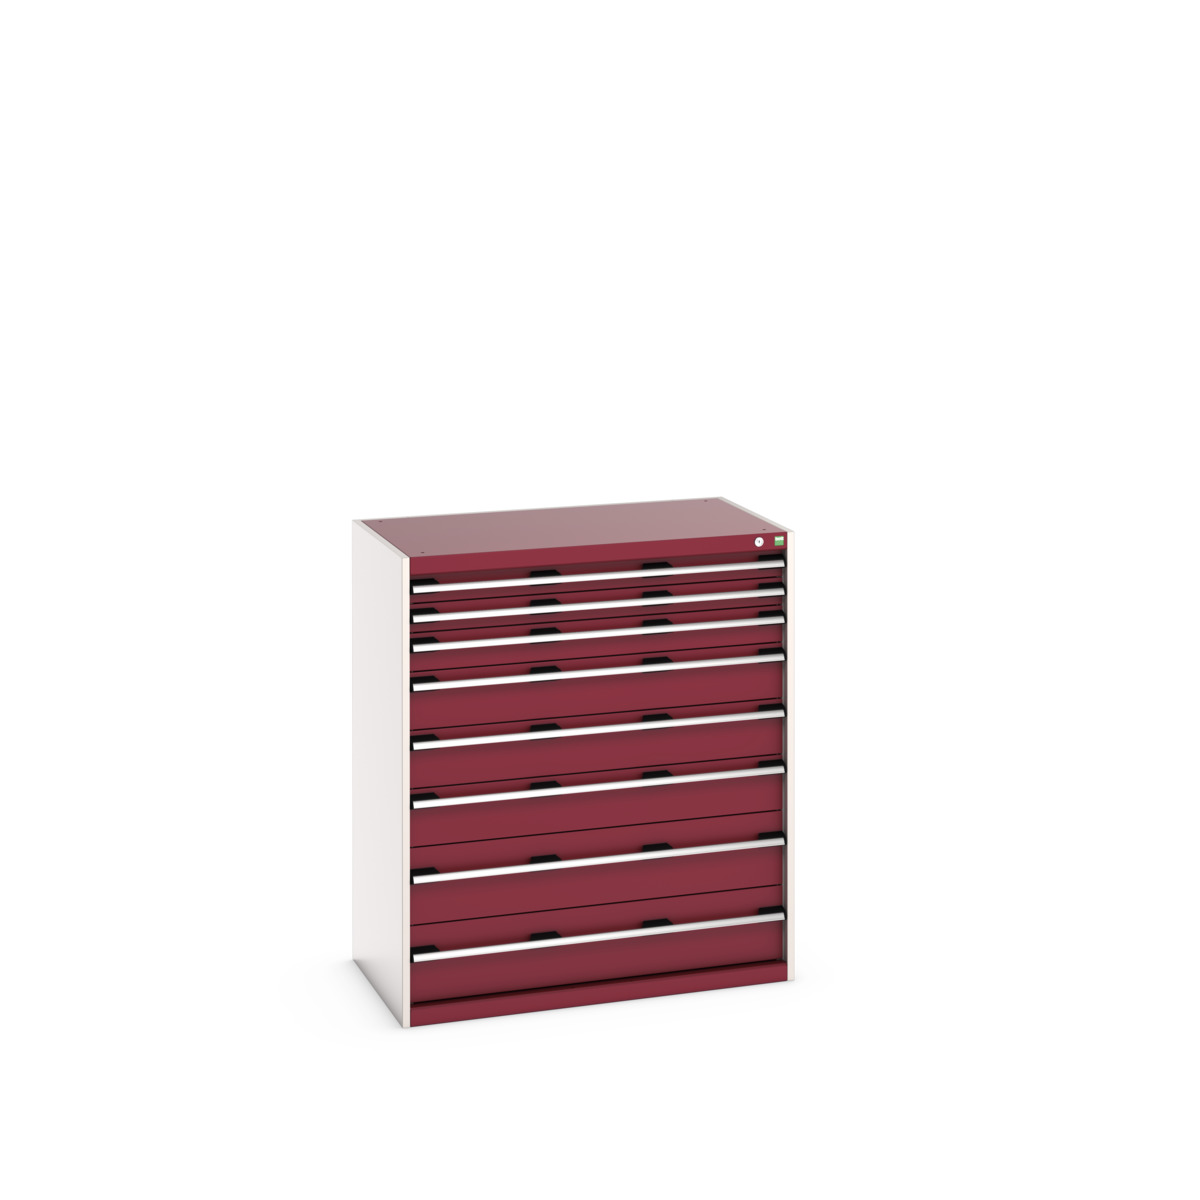 40021040.24V - cubio drawer cabinet